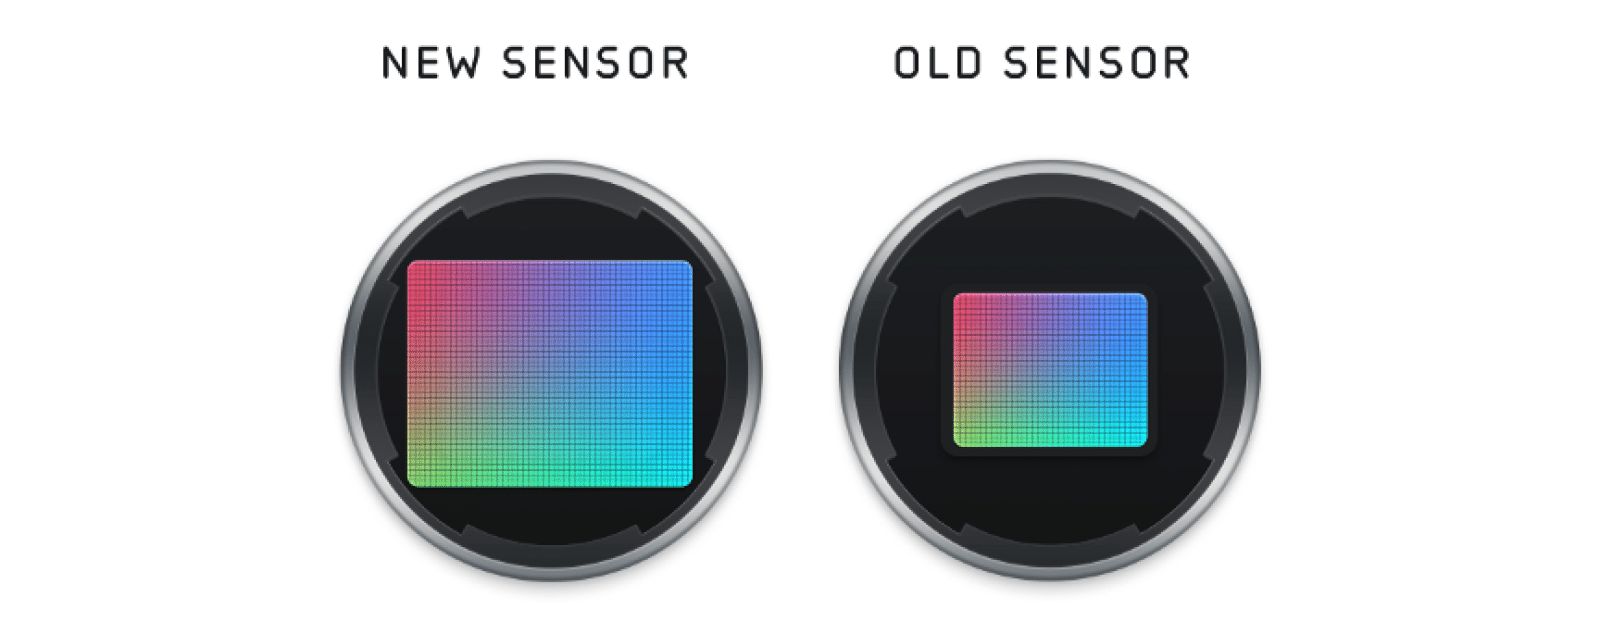 tamaño del sensor de la cámara del iphone 12 vs iphone 11